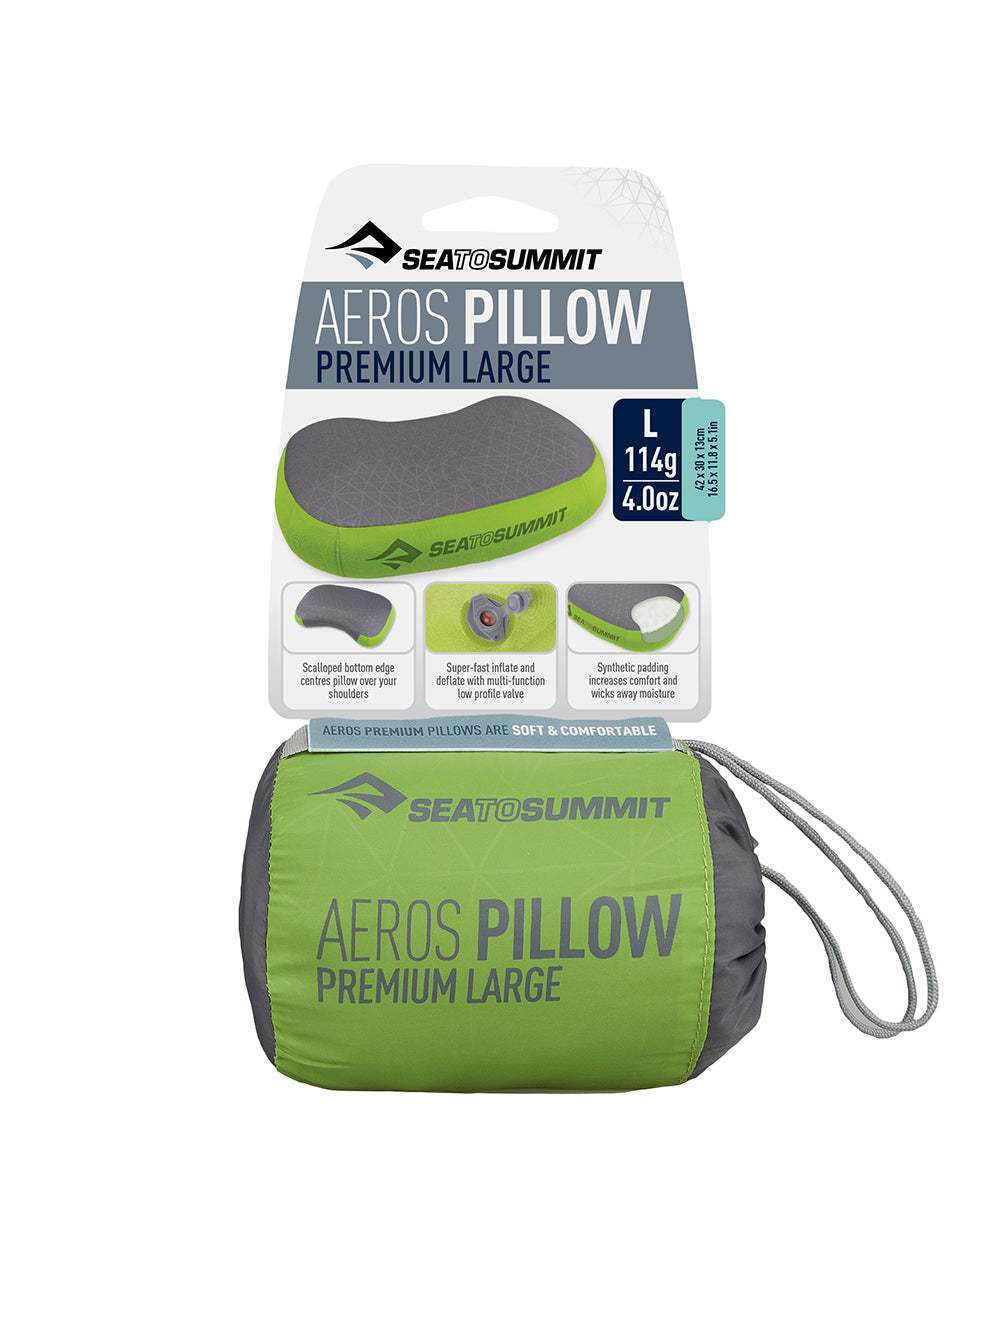 Aeros Premium Pillow Regular